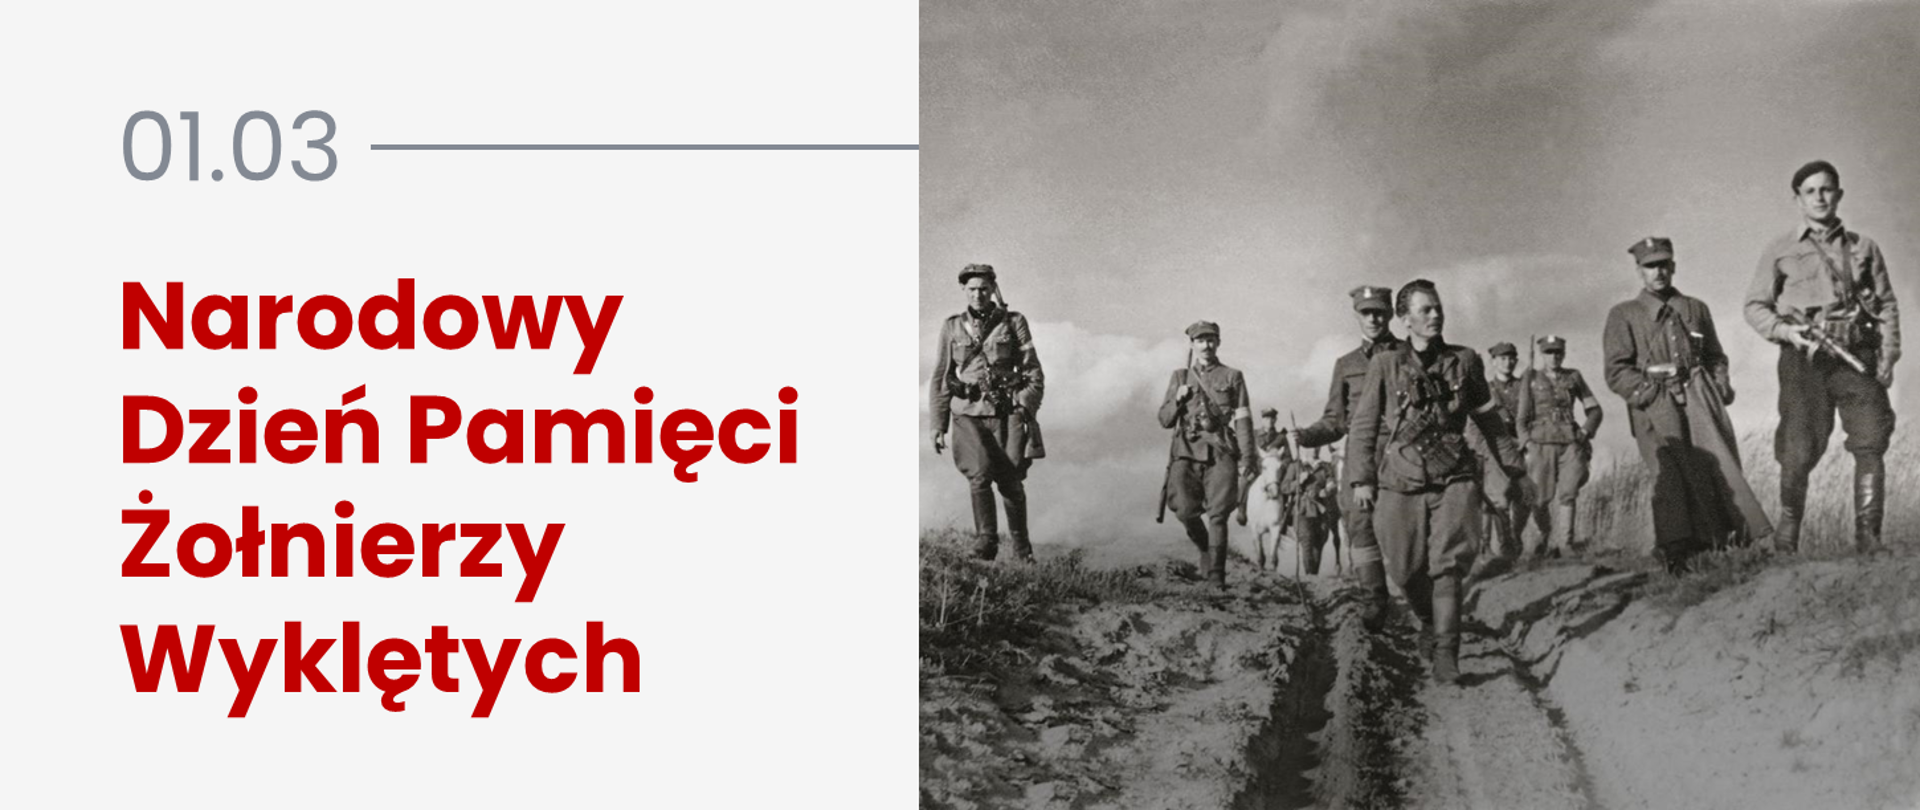 Immagine d'archivio dei soldati maledetti accanto al testo: "3 marzo, Giornata nazionale della memoria dei soldati maledetti"